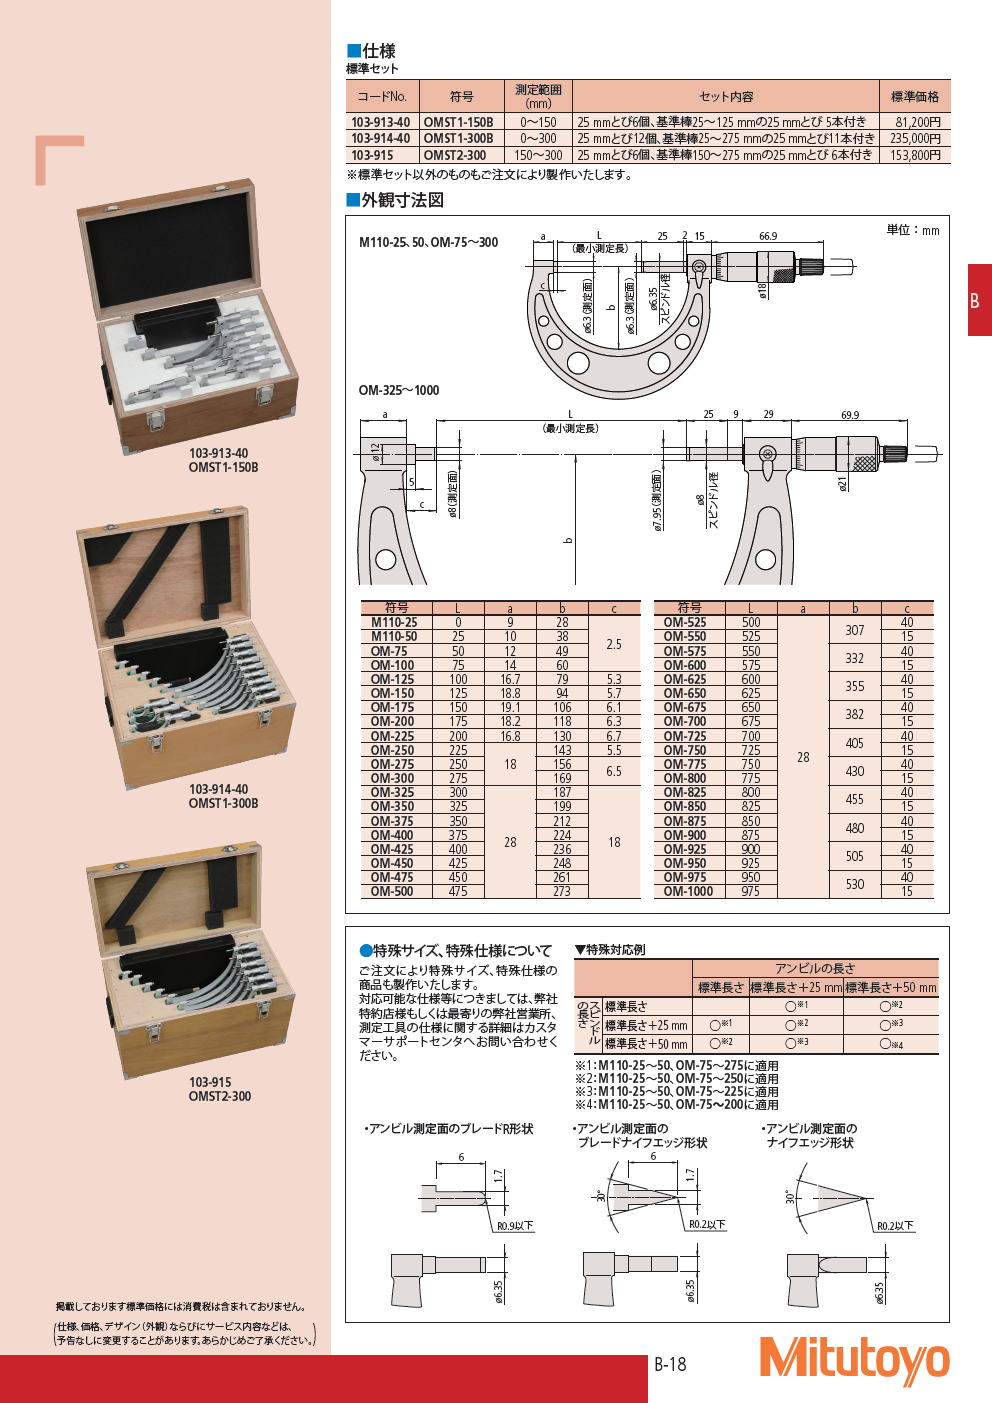 お気に入り ミツトヨ 103シリーズ 標準外側マイクロメータOM OM-800Mitutoyo yu501